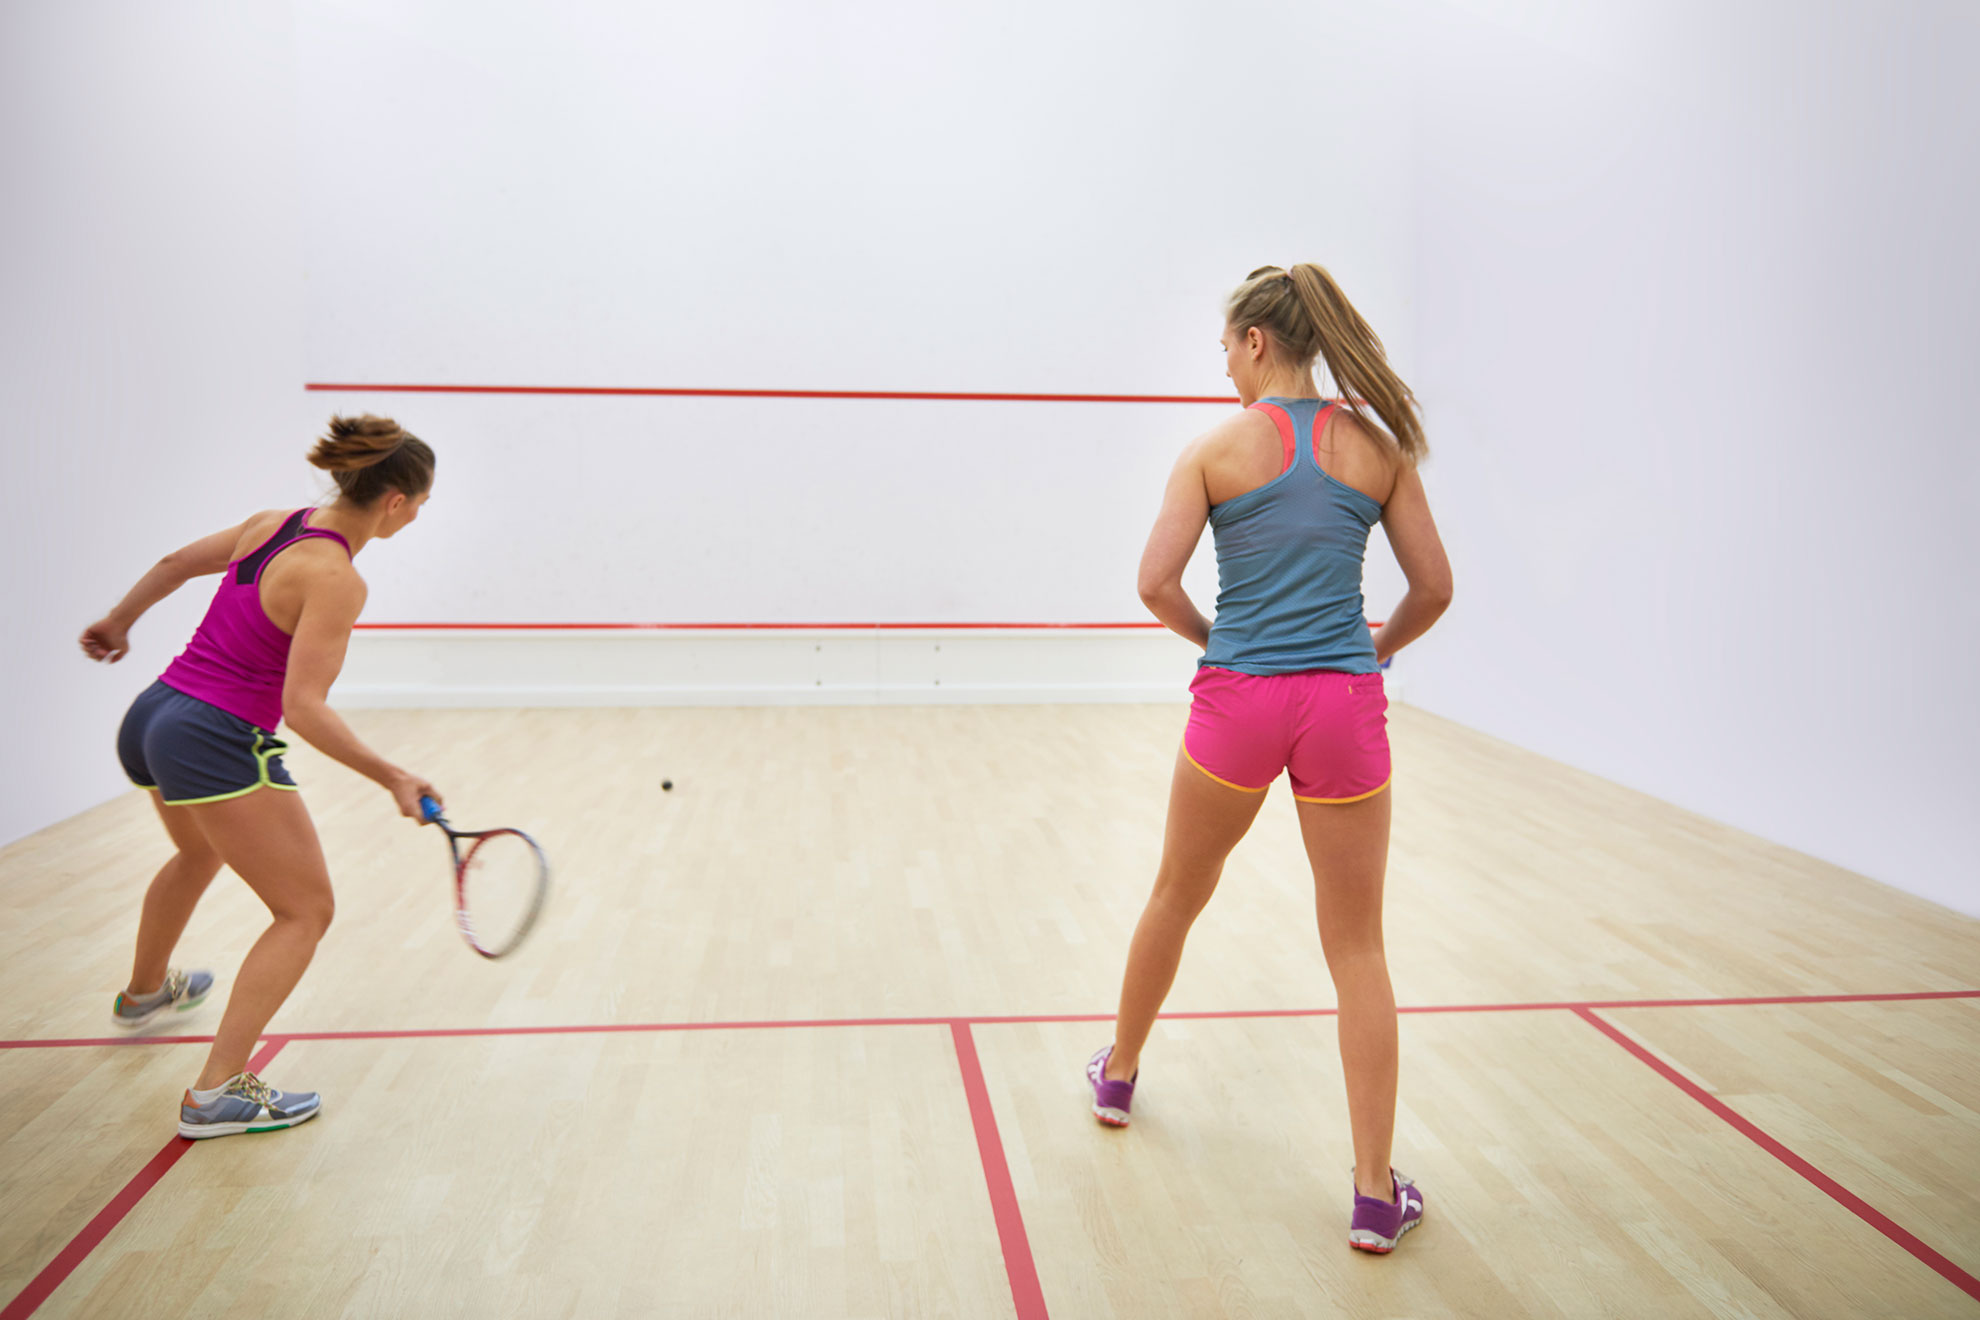 Dwie zawodniczki grające w squasha, ilustracja do artykułu o piłce z białą kropką